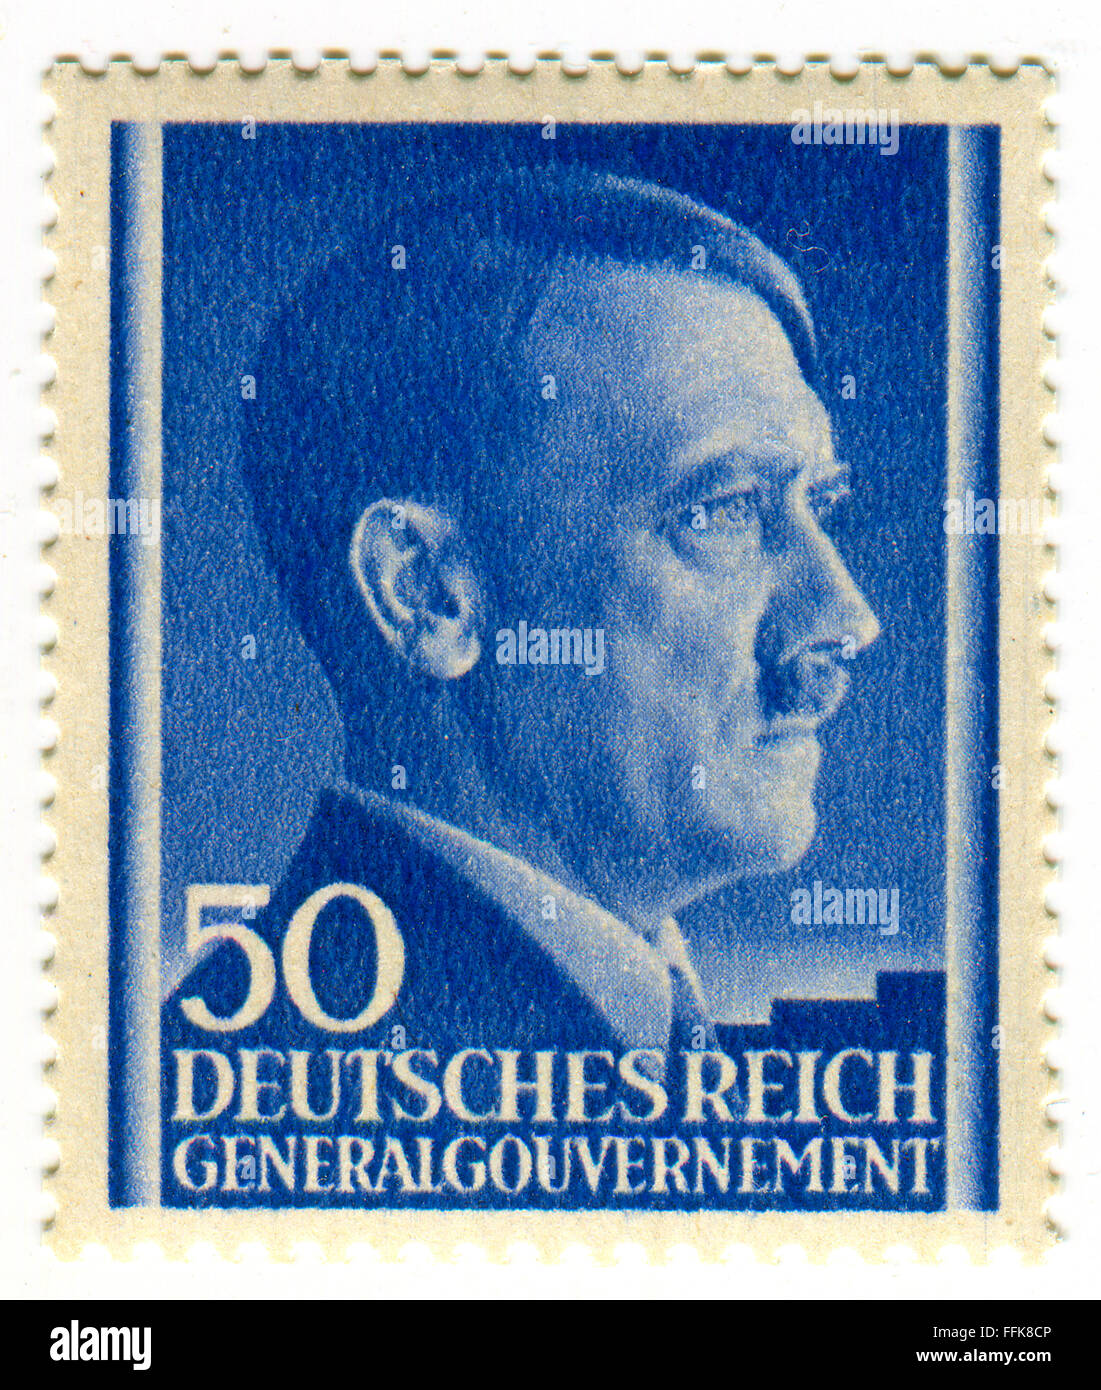 Un timbre imprimé en Allemagne montre l'image d'Adolf Hitler (20 avril 1889 - 30 avril 1945) était un politicia allemand Banque D'Images